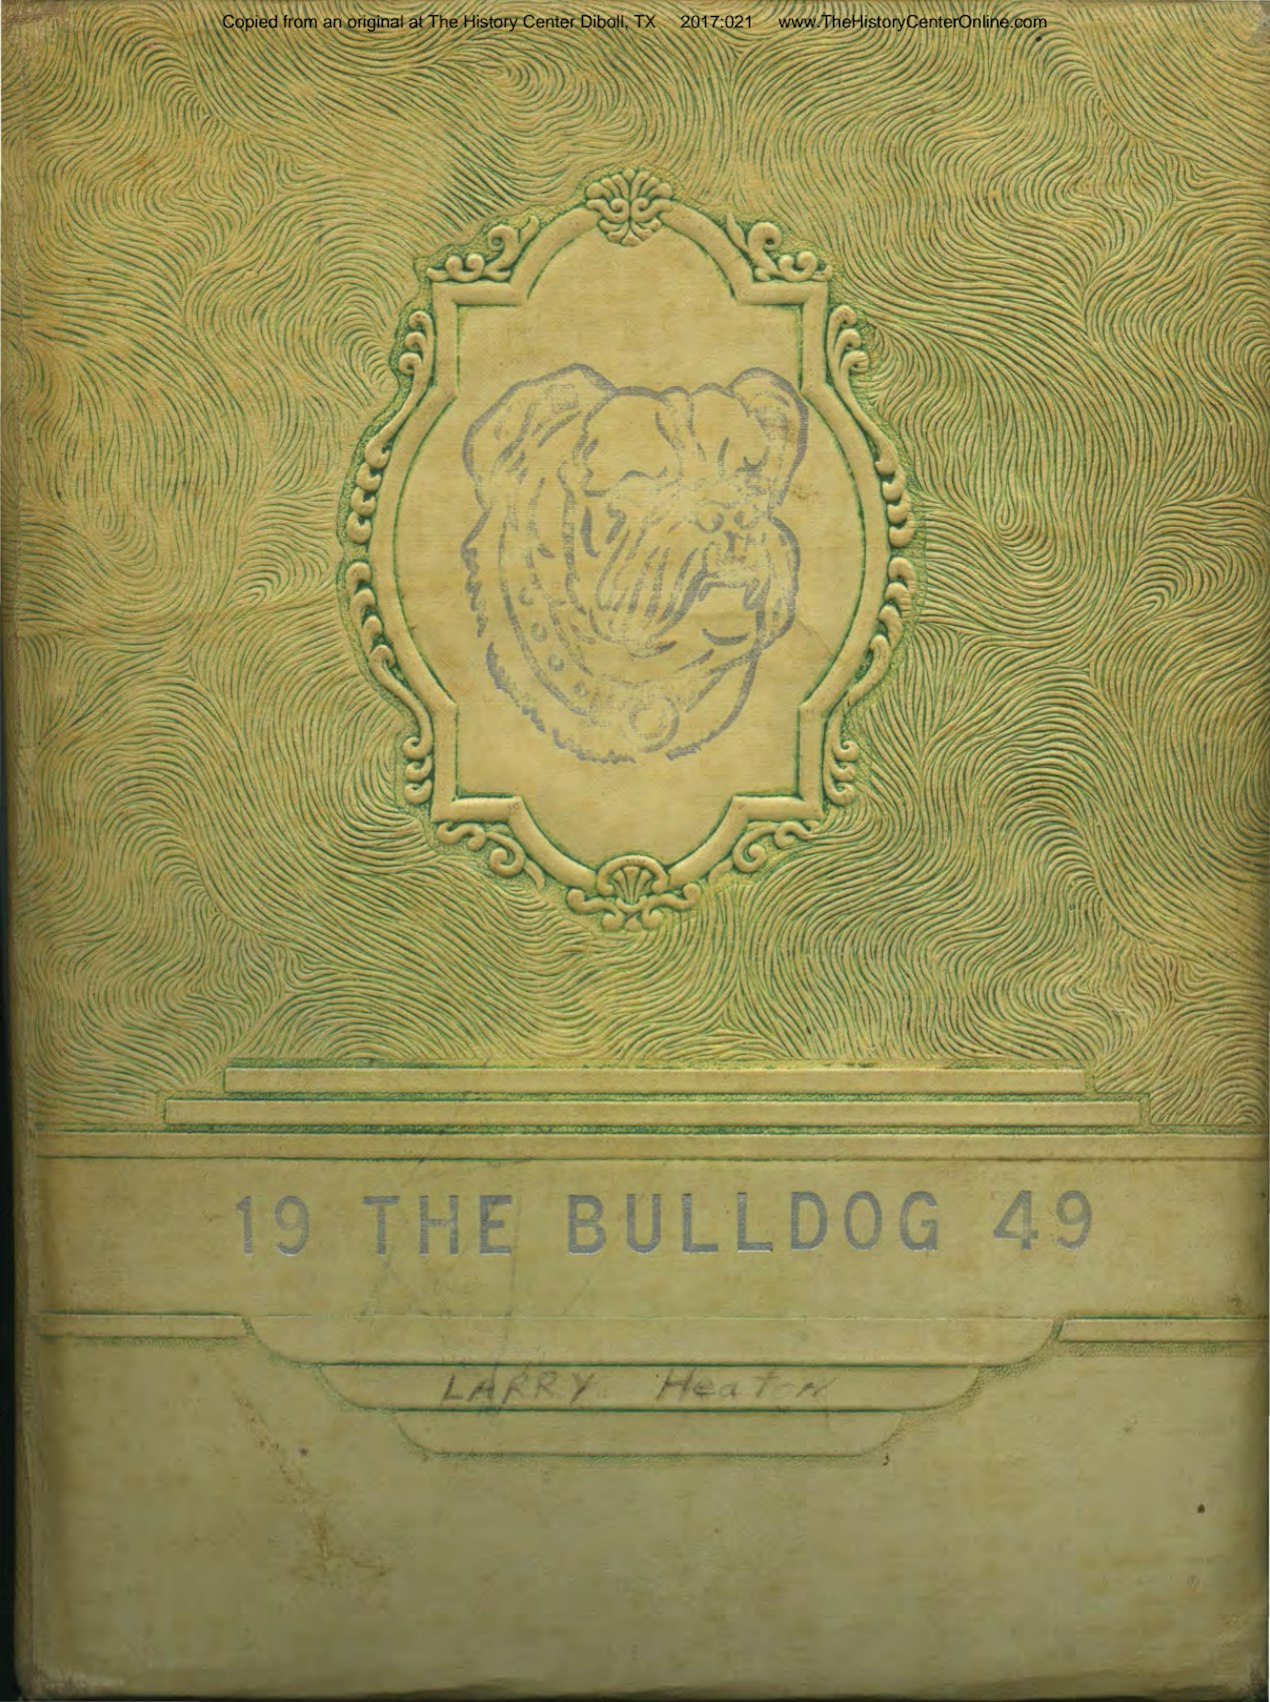 1949_The_Bulldog